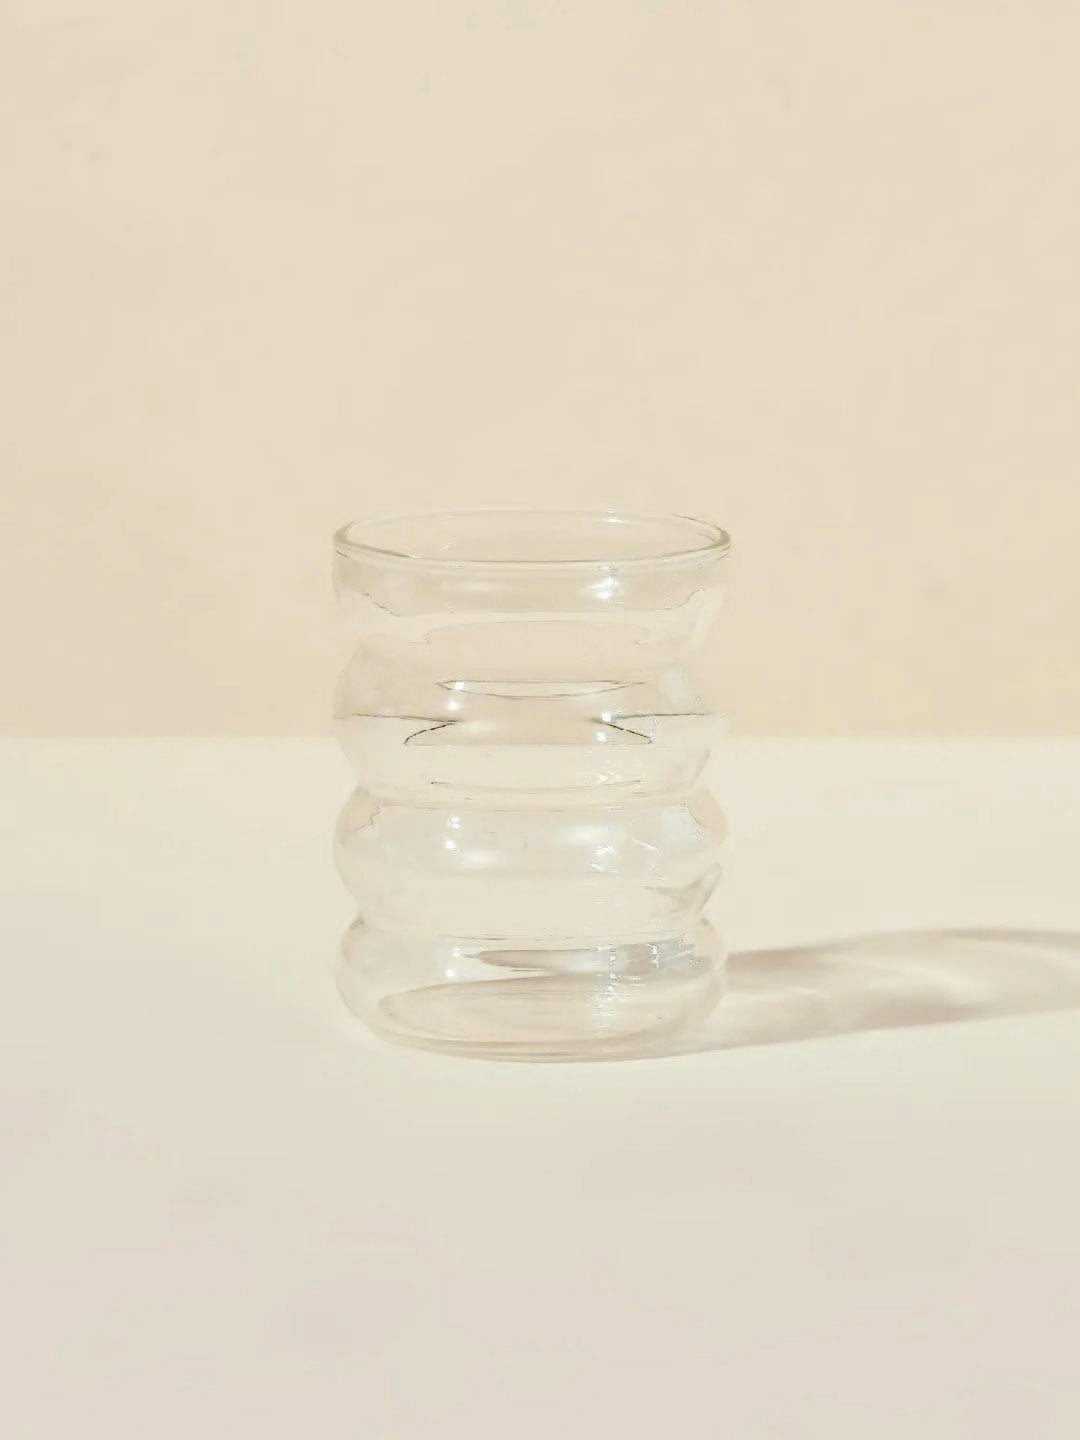 Bubble Cup – Blume